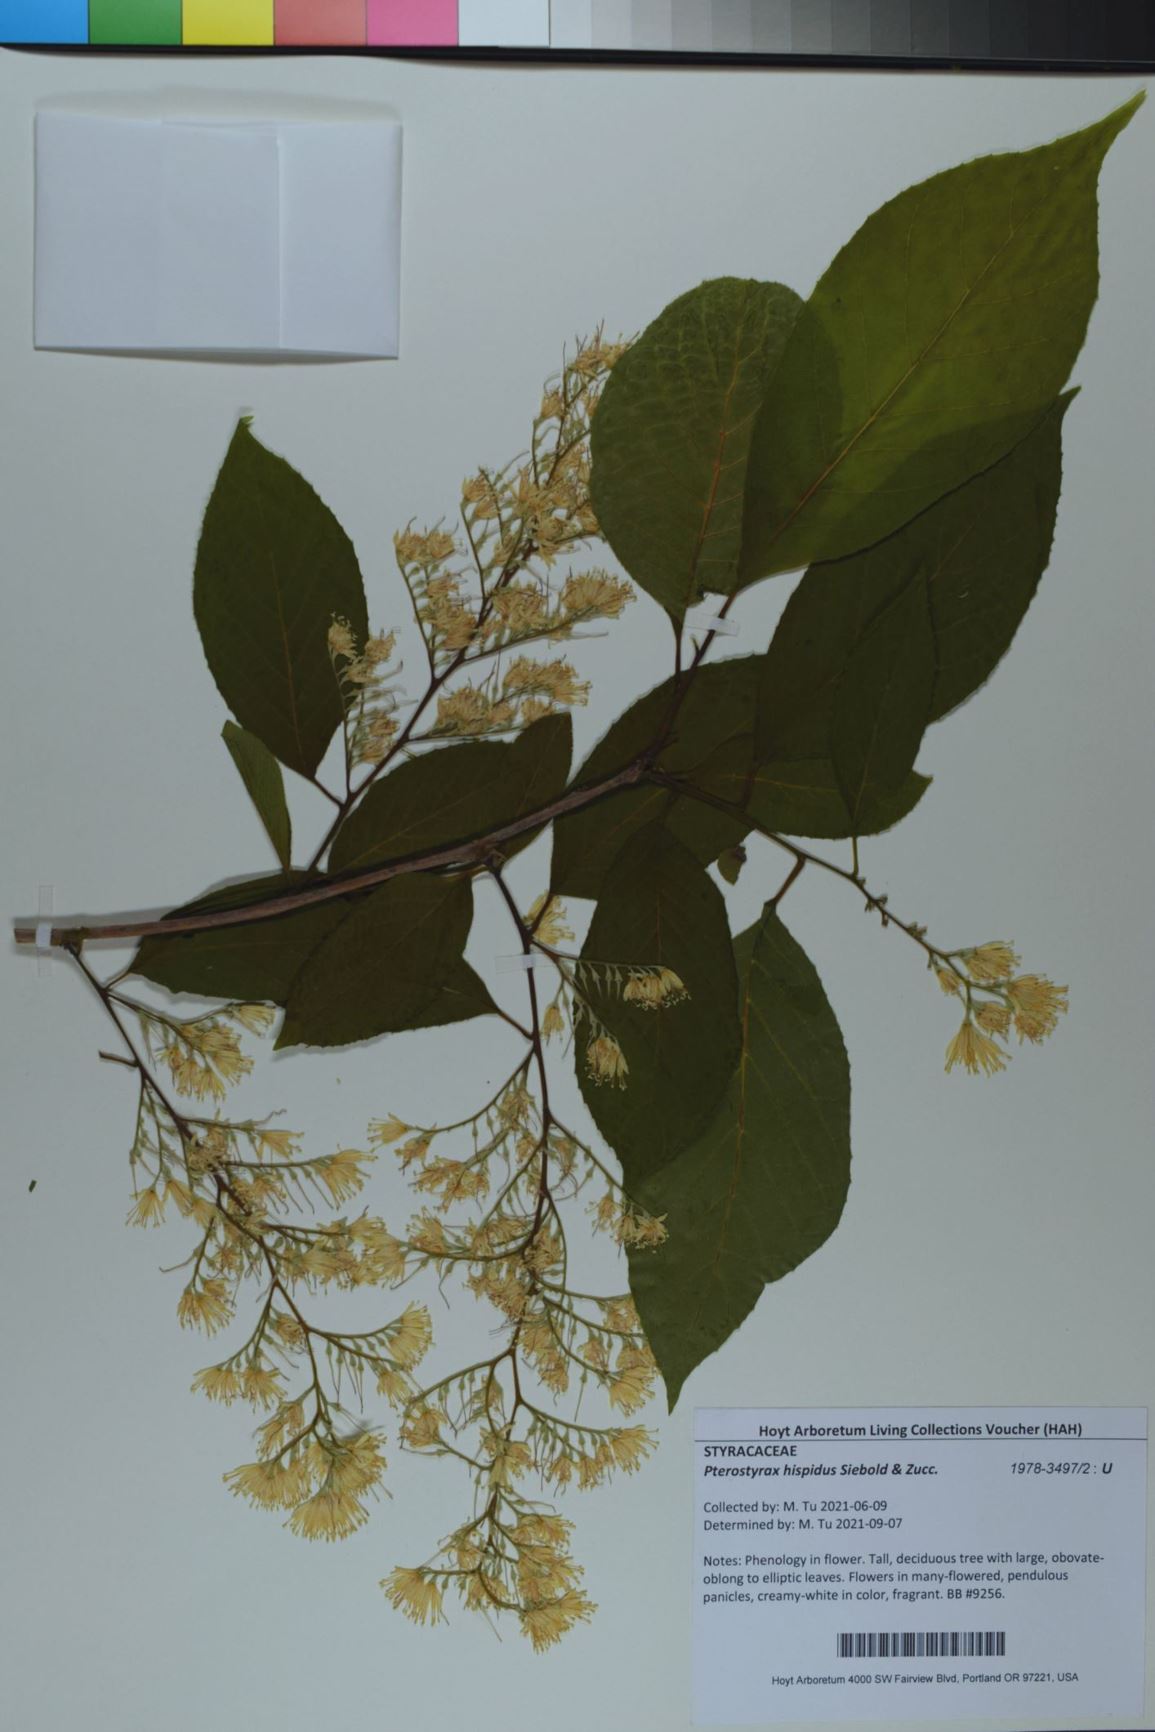 Pterostyrax hispidus - Fragrant Epaulette Tree, epaulette tree